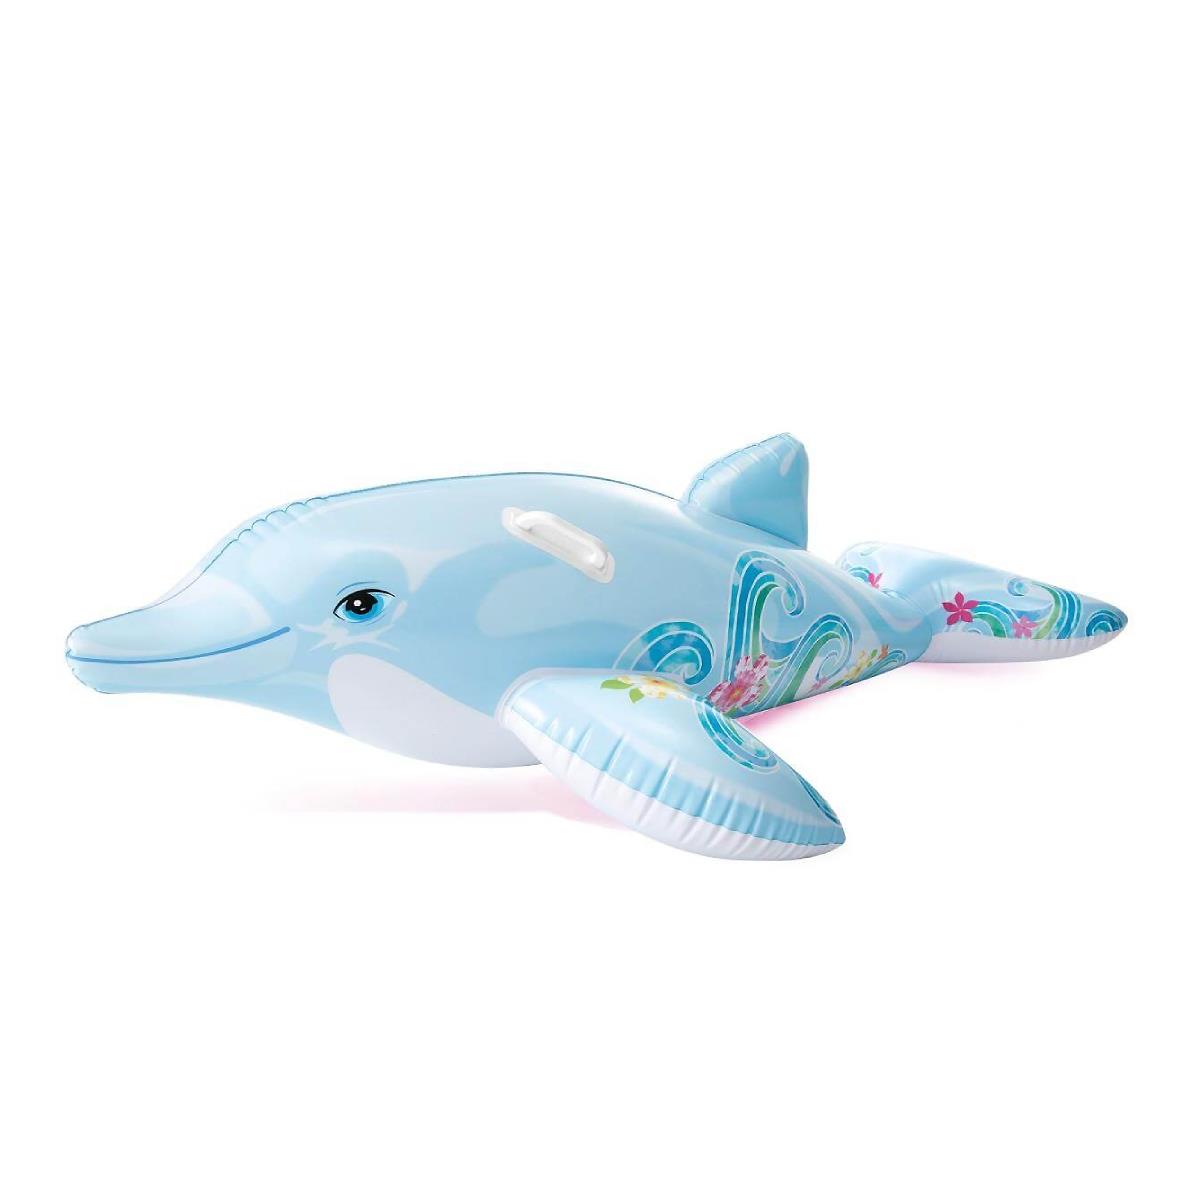 Игрушка надувная Дельфин (58535)  INTEX игрушка надувная